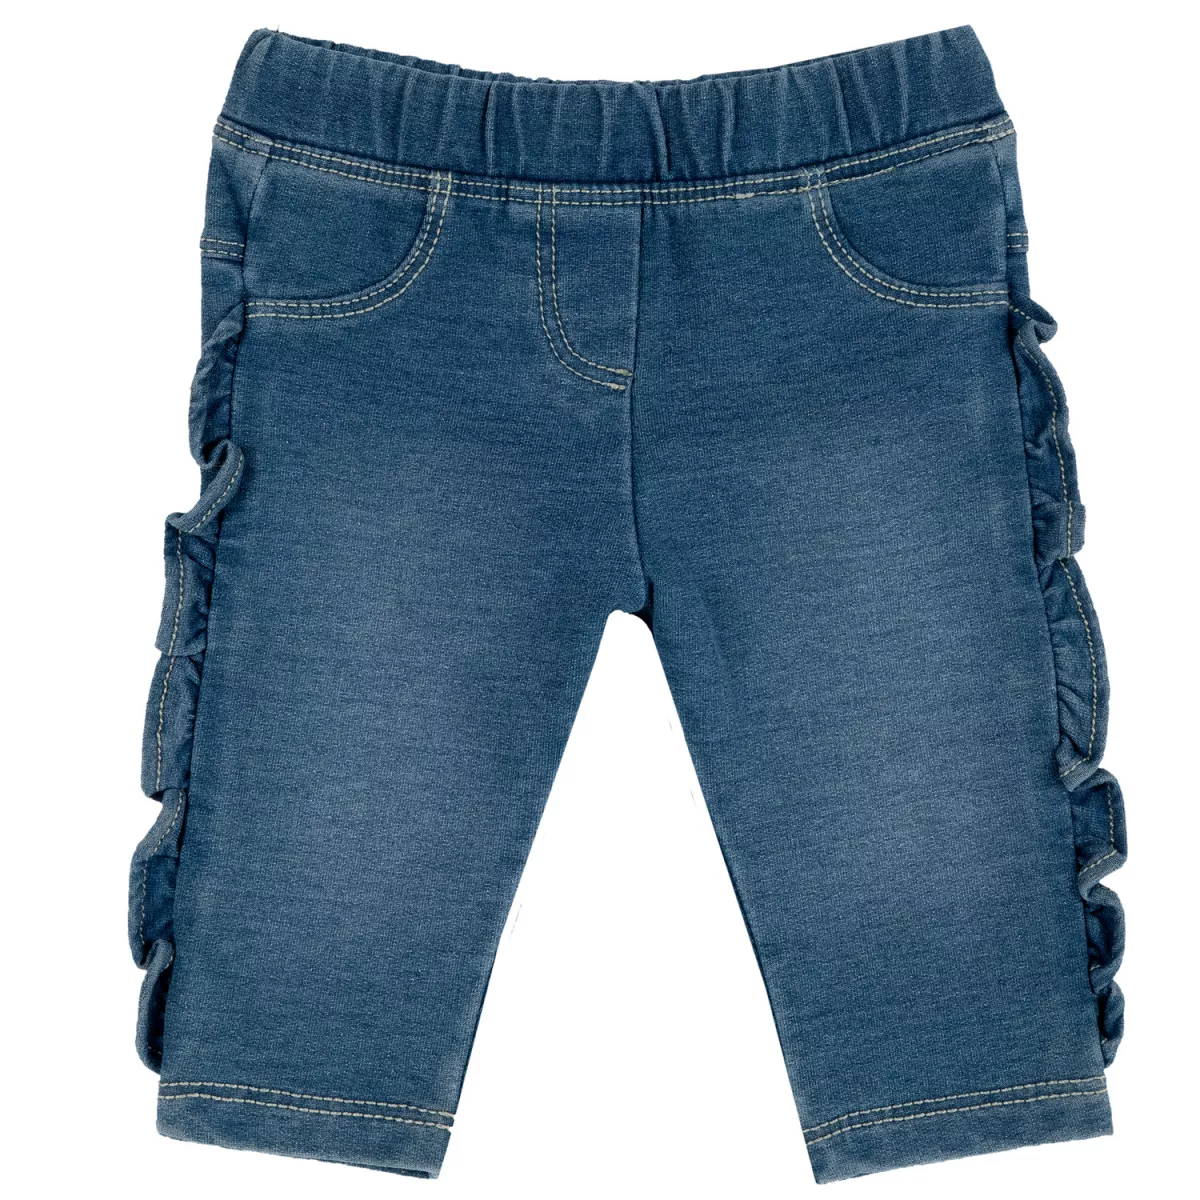 Pantalon copii Chicco, albastru deschis, 98